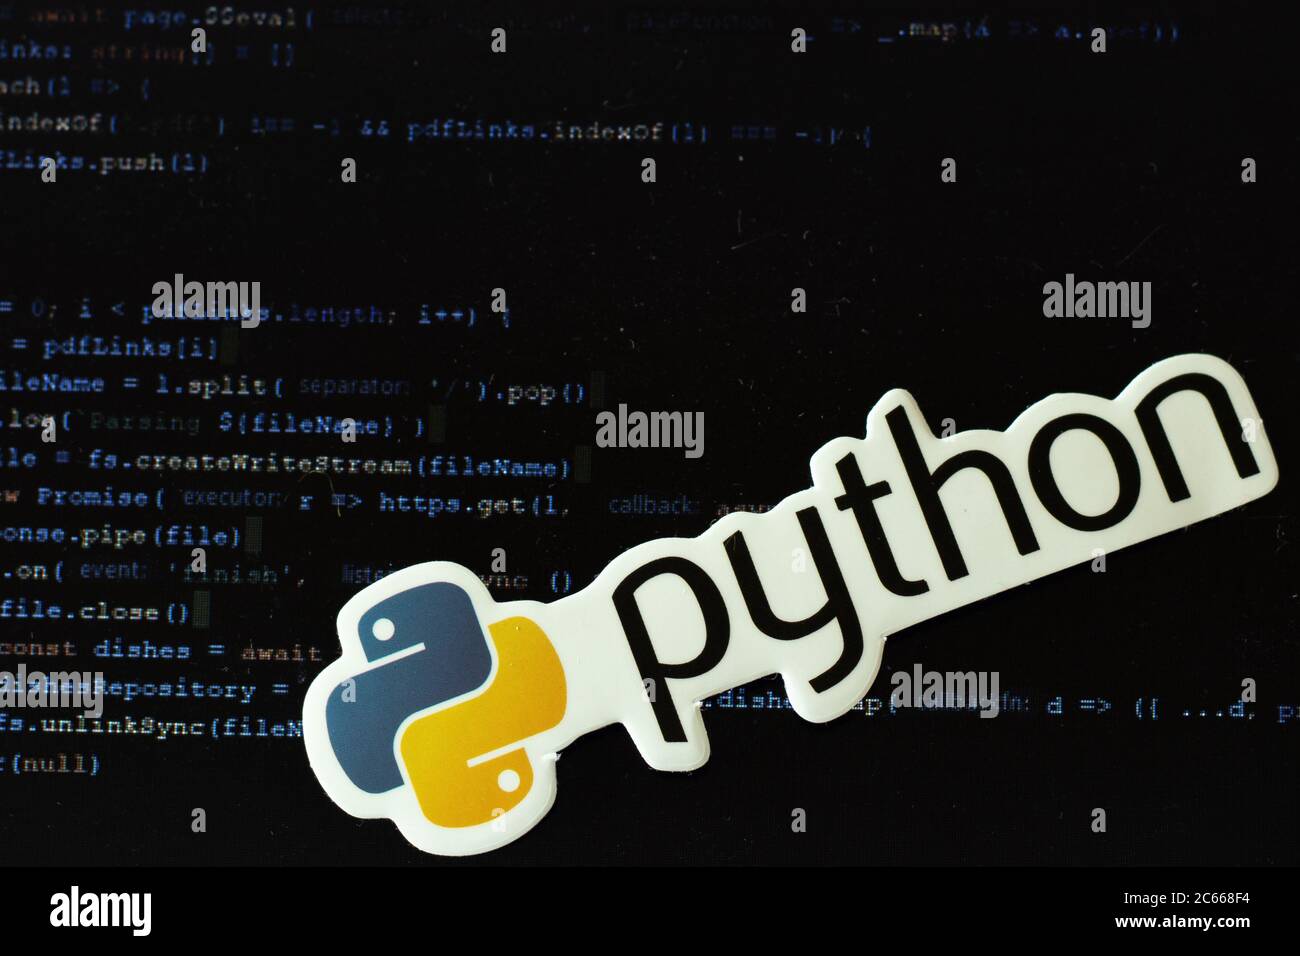 Moscou, Russie - 1er juin 2020 : logo Python avec code de programme en arrière-plan Illustration éditoriale Banque D'Images